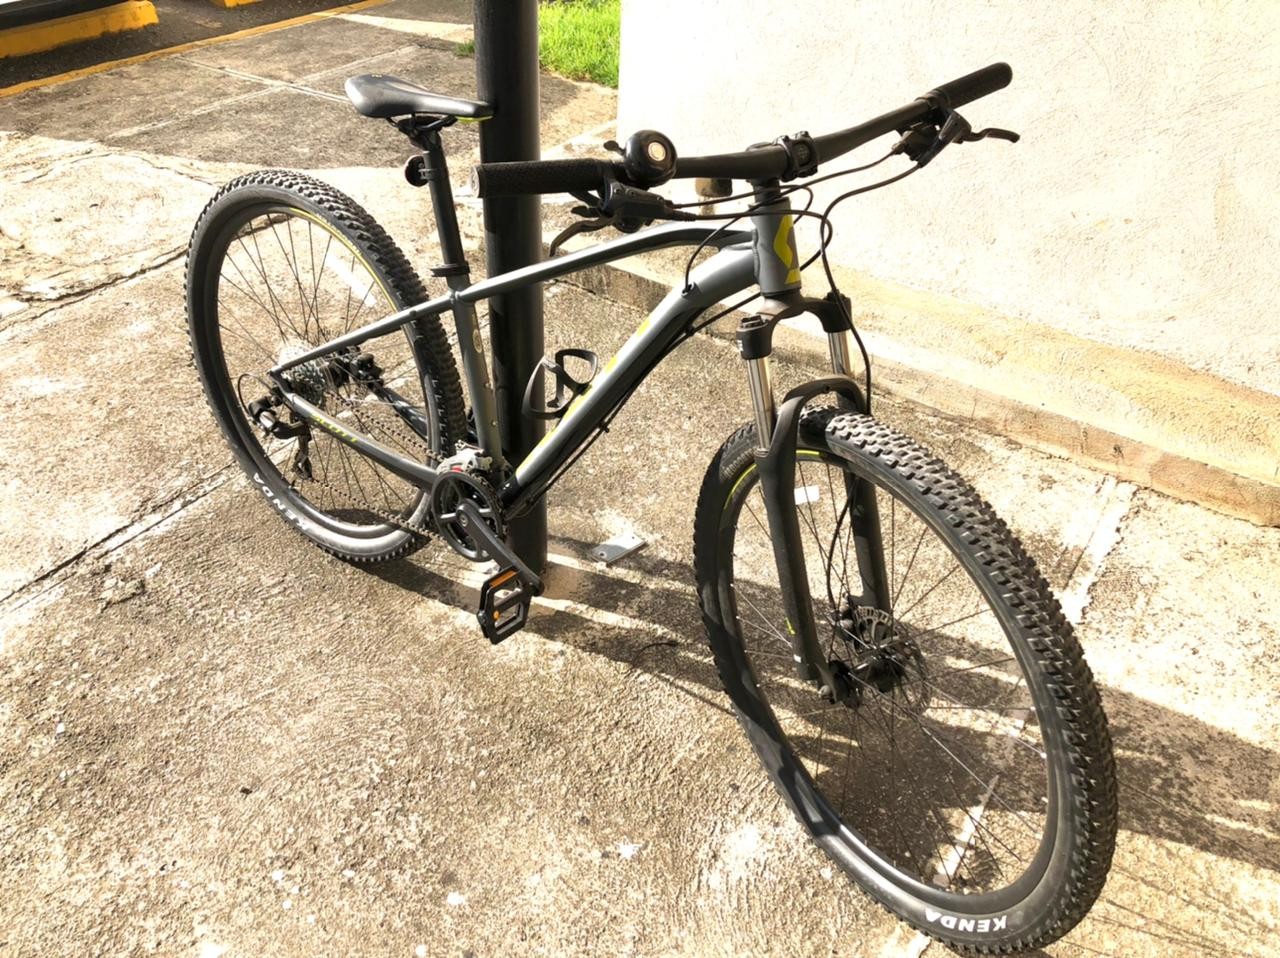 bicicletas y accesorios - Bicicleta Aspect 960 de Scott año 2021 Aros 29 y cuadro Small. Como nueva